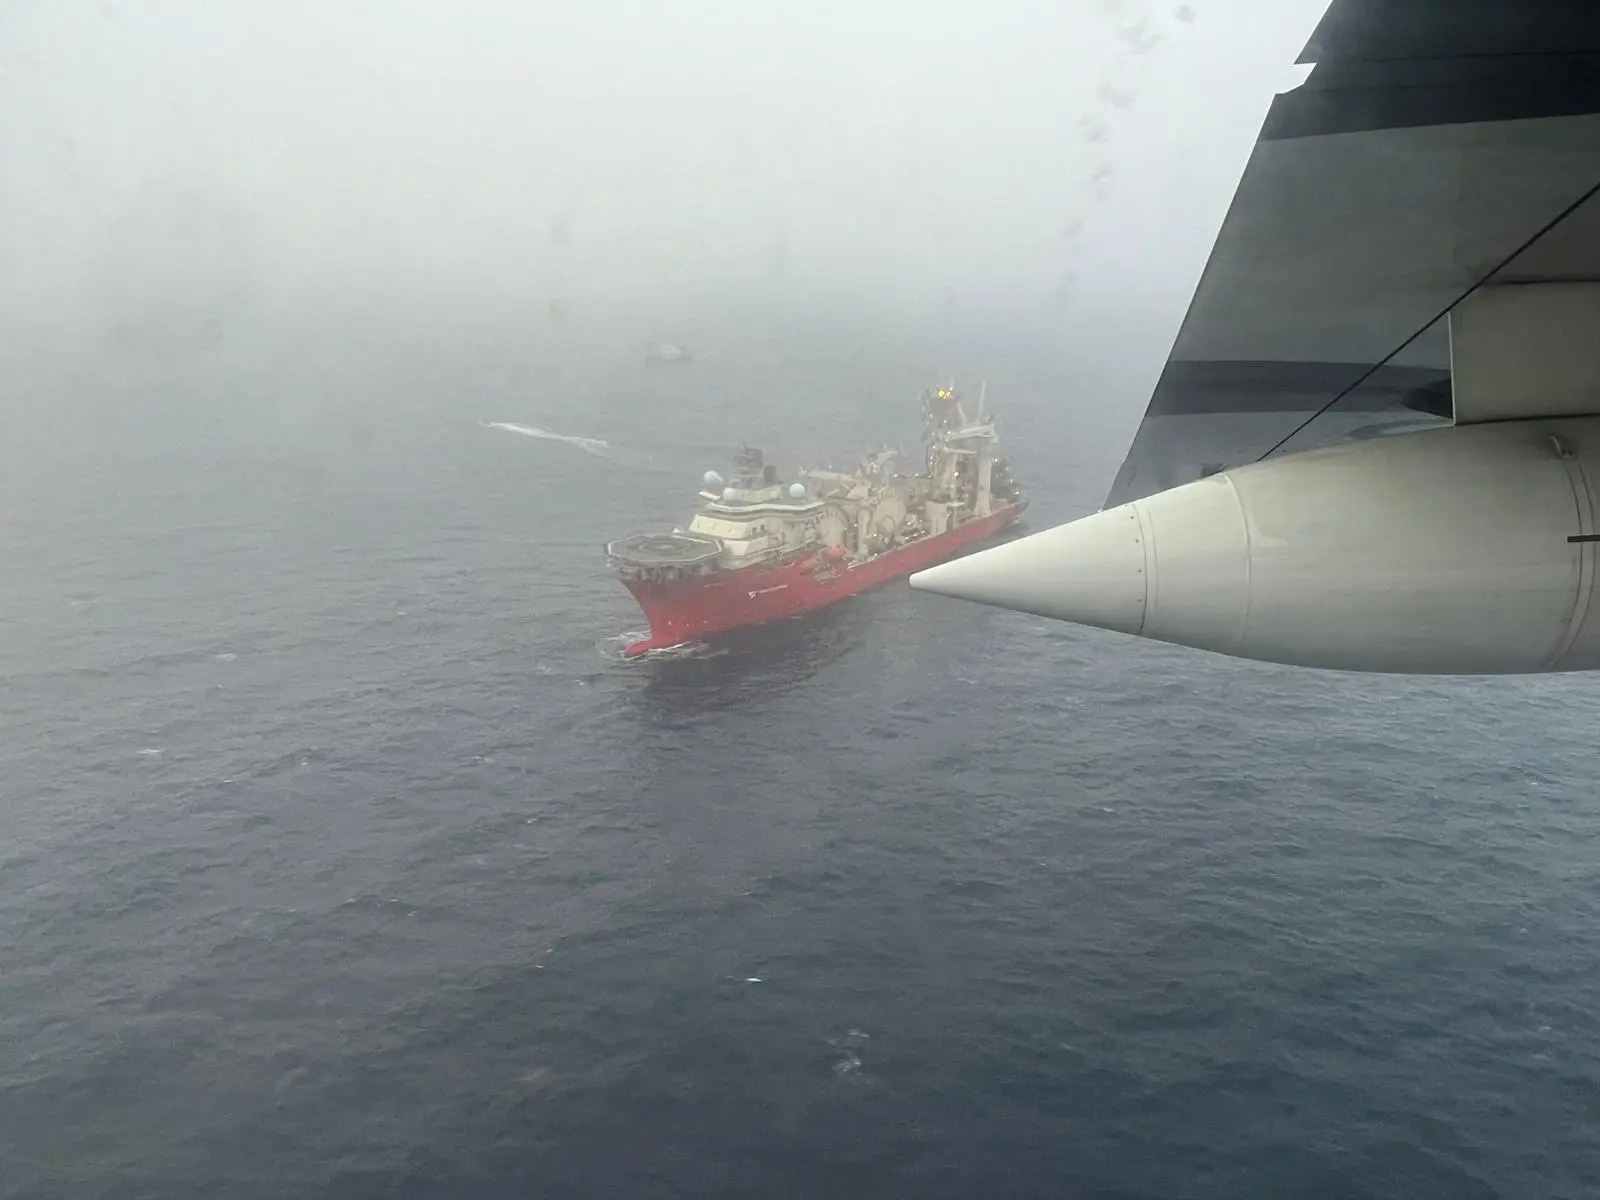 מטוס קנדי טס בצלה של ספינת מחקר המשתתפת בחיפושים, אתמול